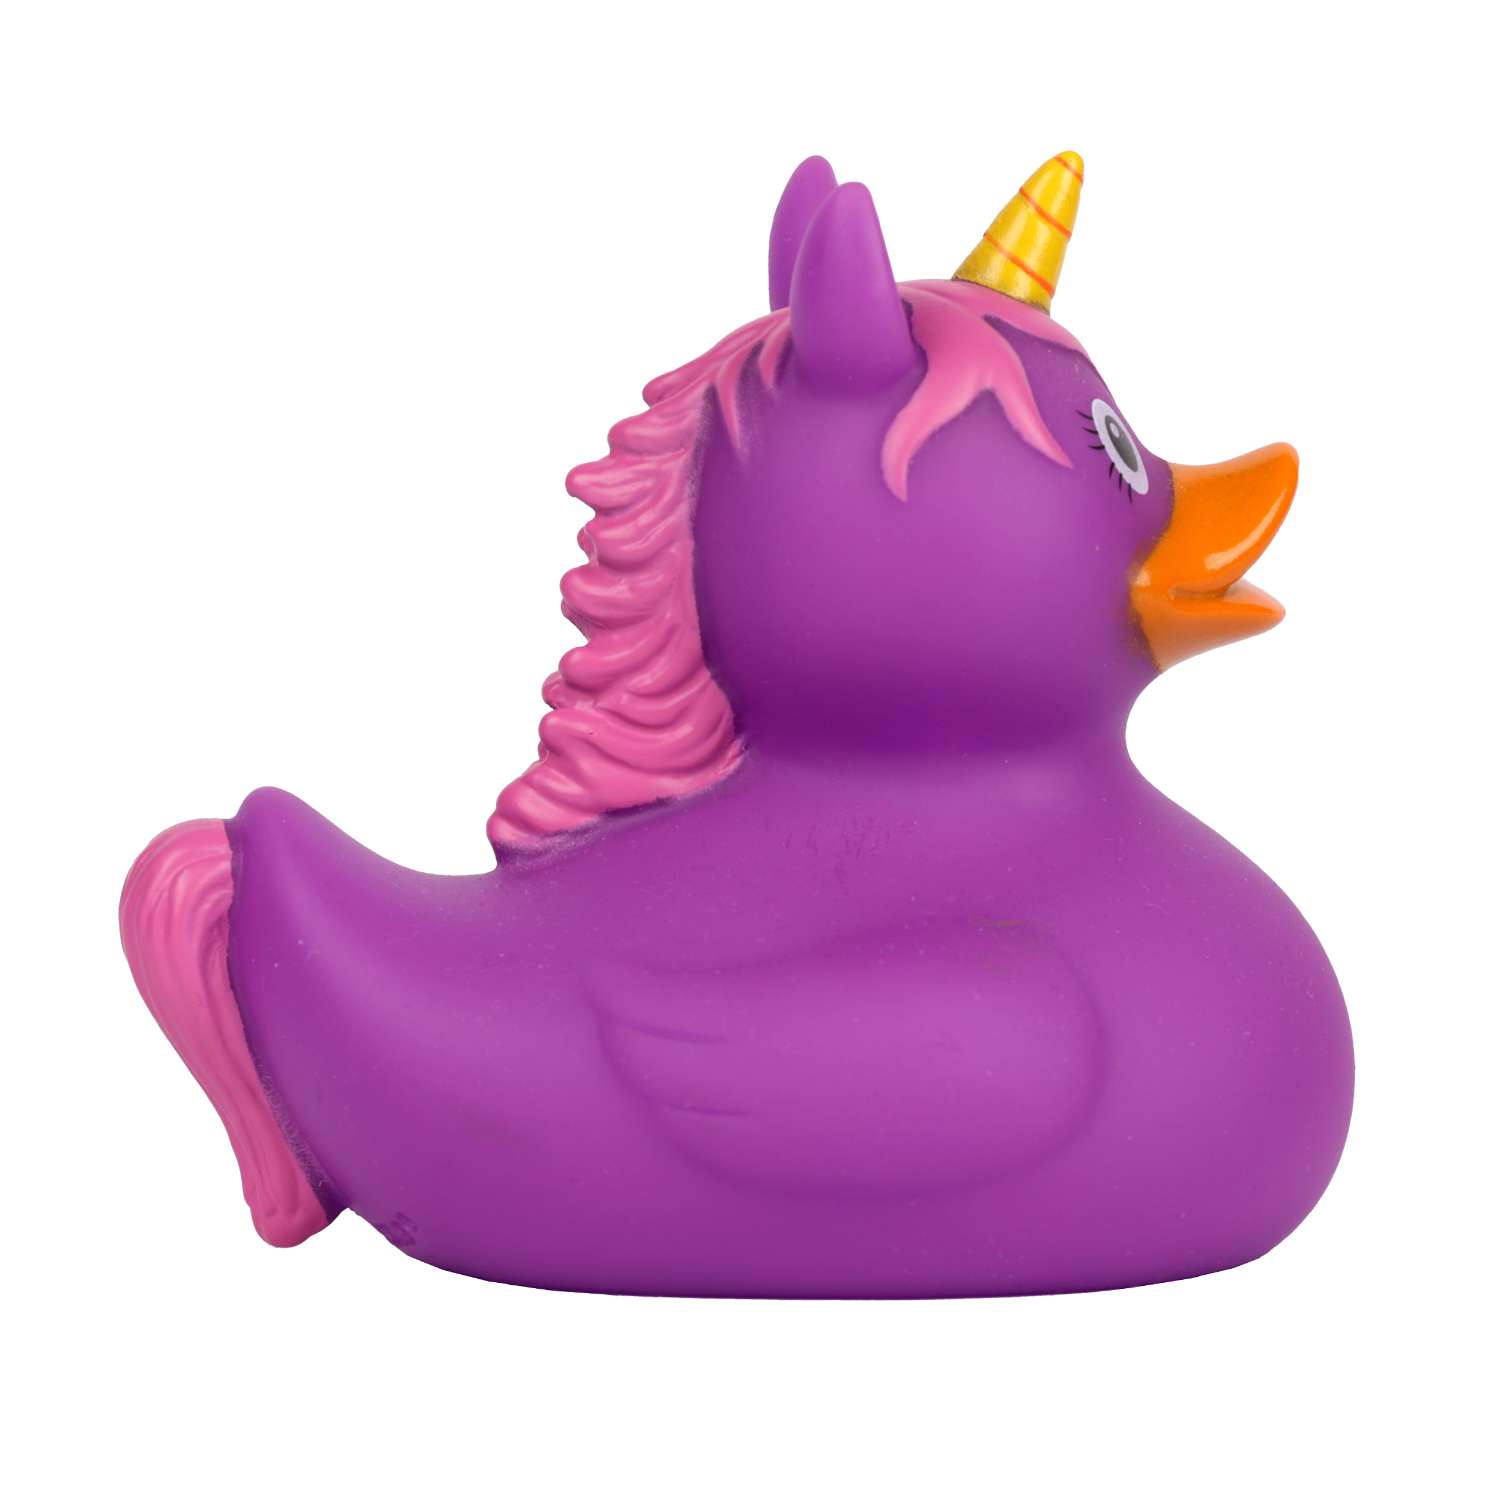 Игрушка для ванны сувенир Funny ducks Единорог пурпурный уточка 2090 - фото 3